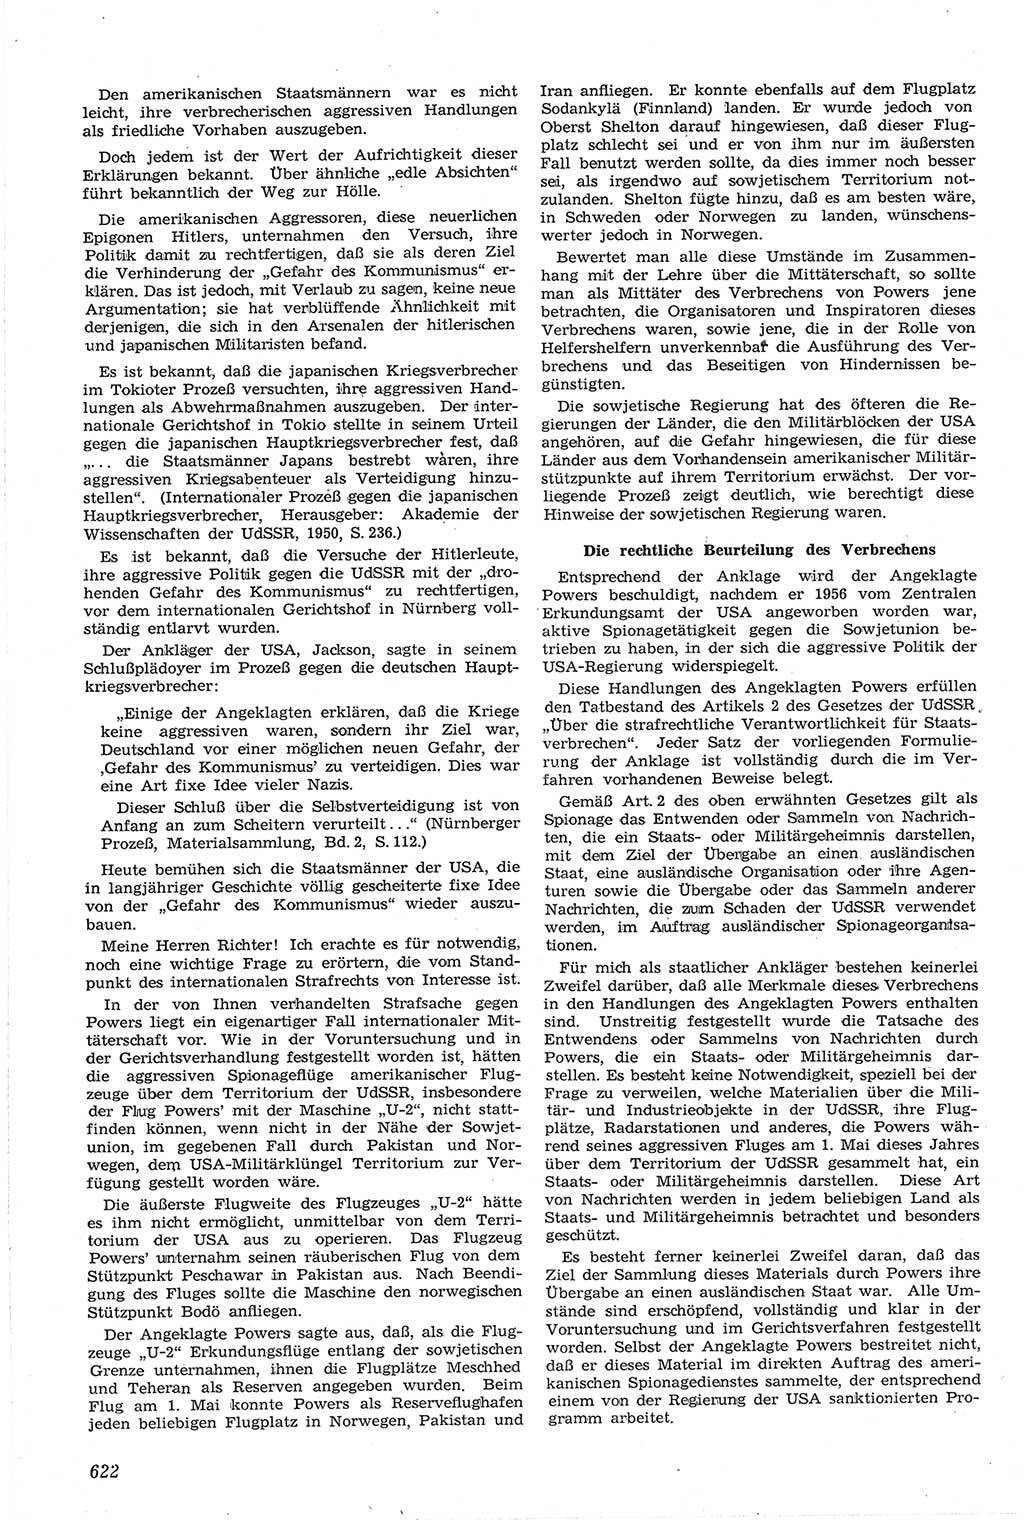 Neue Justiz (NJ), Zeitschrift für Recht und Rechtswissenschaft [Deutsche Demokratische Republik (DDR)], 14. Jahrgang 1960, Seite 622 (NJ DDR 1960, S. 622)